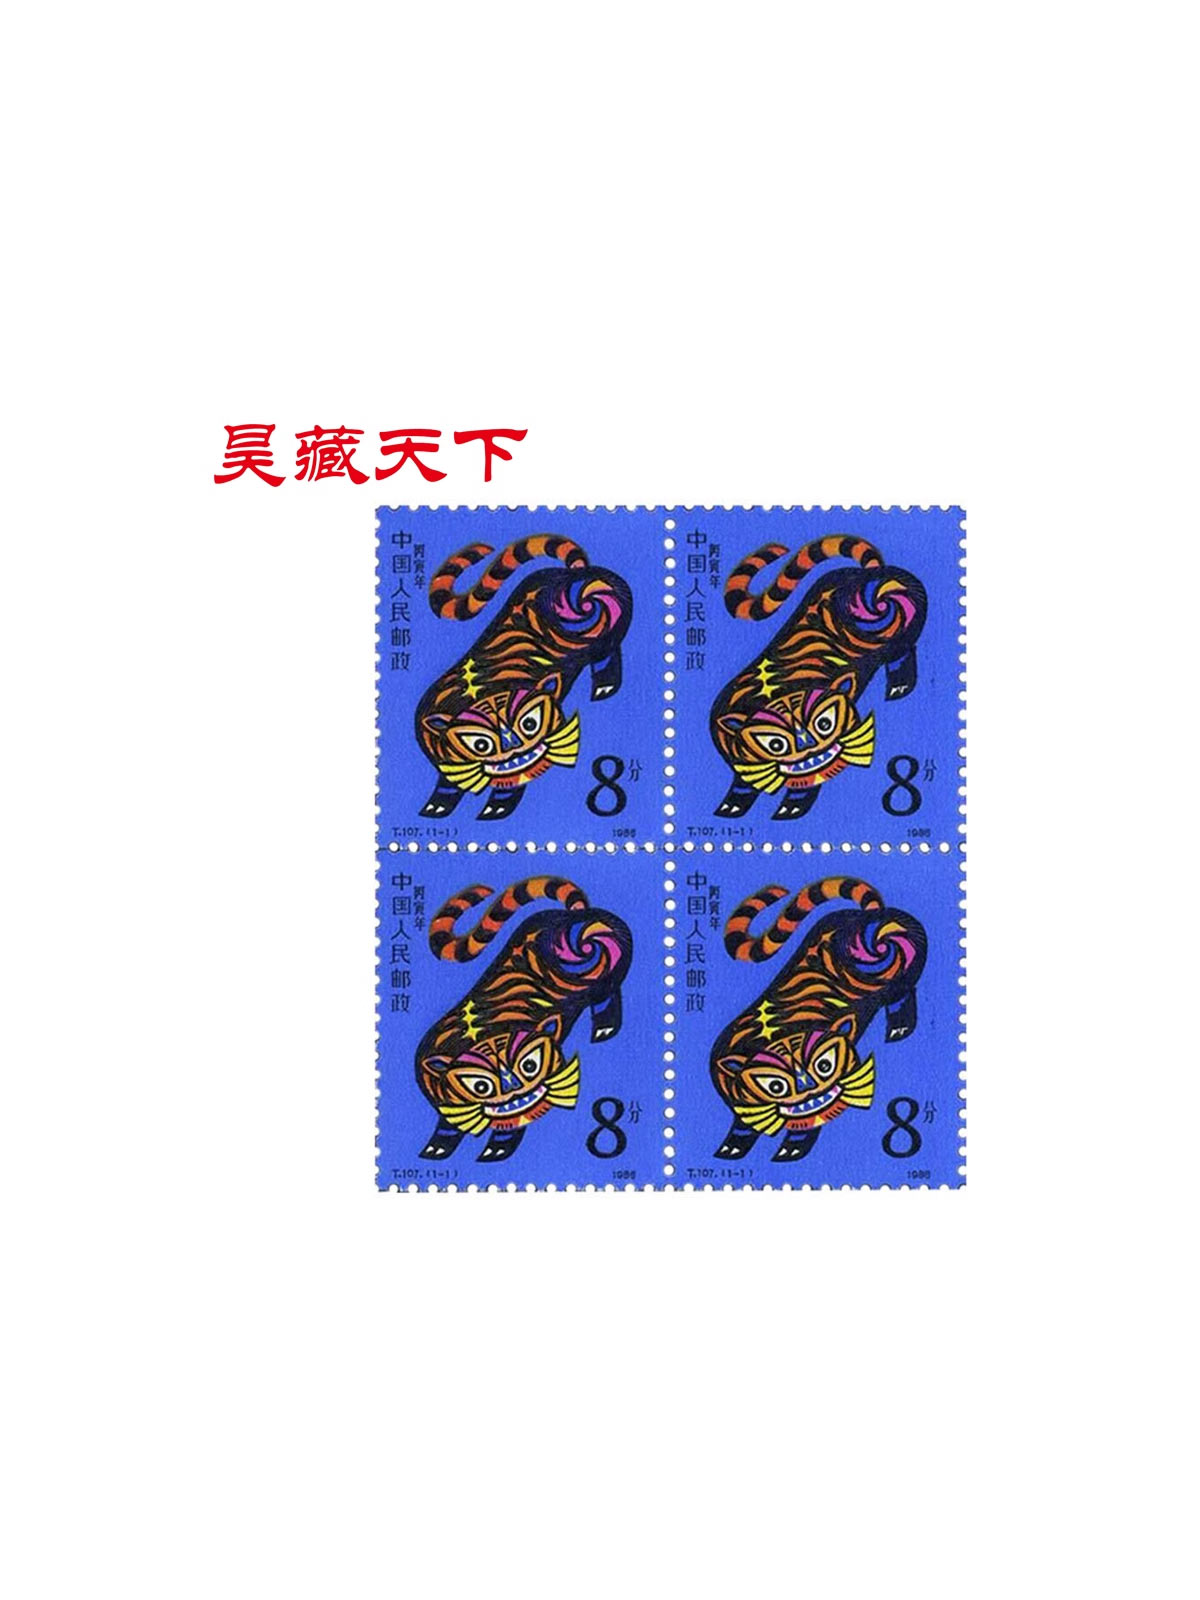 一轮生肖邮票1986年虎年生肖邮票四方连邮票